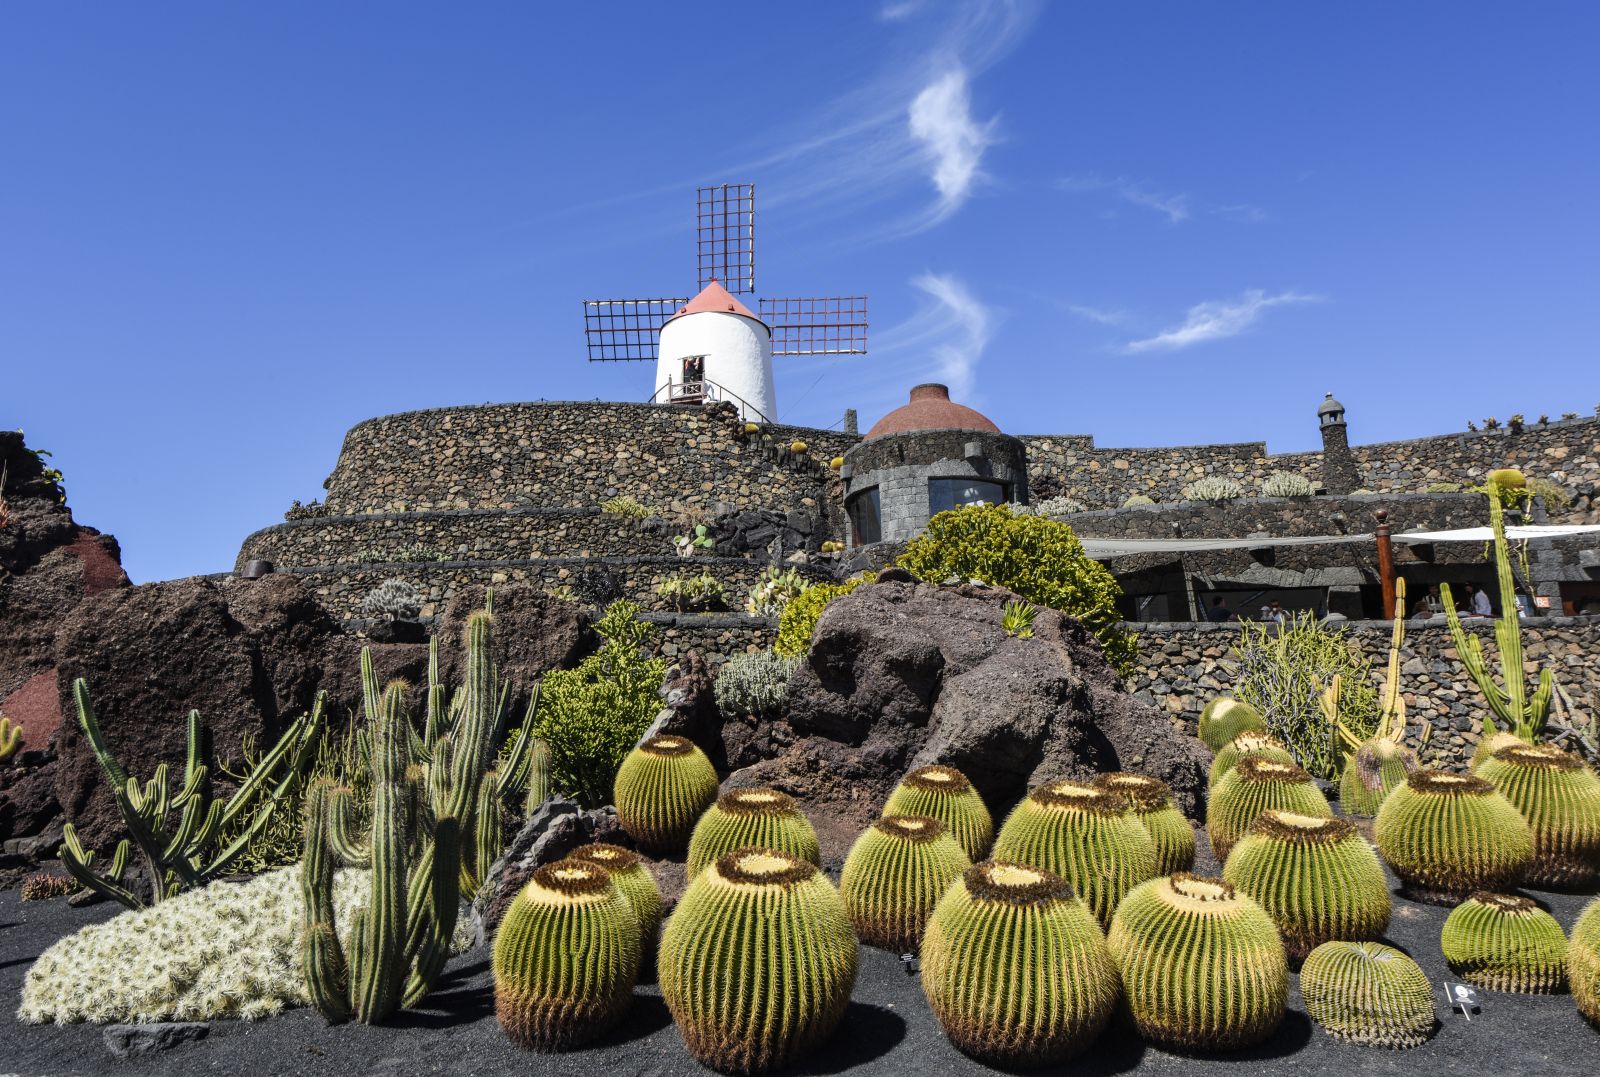 Lanzarote besticht durch die Kombination aus beeindruckender Vulkanlandschaft, der fantasievollen Architektur von César Manrique und einer besonderen Vegetation, wie hier im Jardín de Cactus. ©Irene Lorenz/AdobeStock